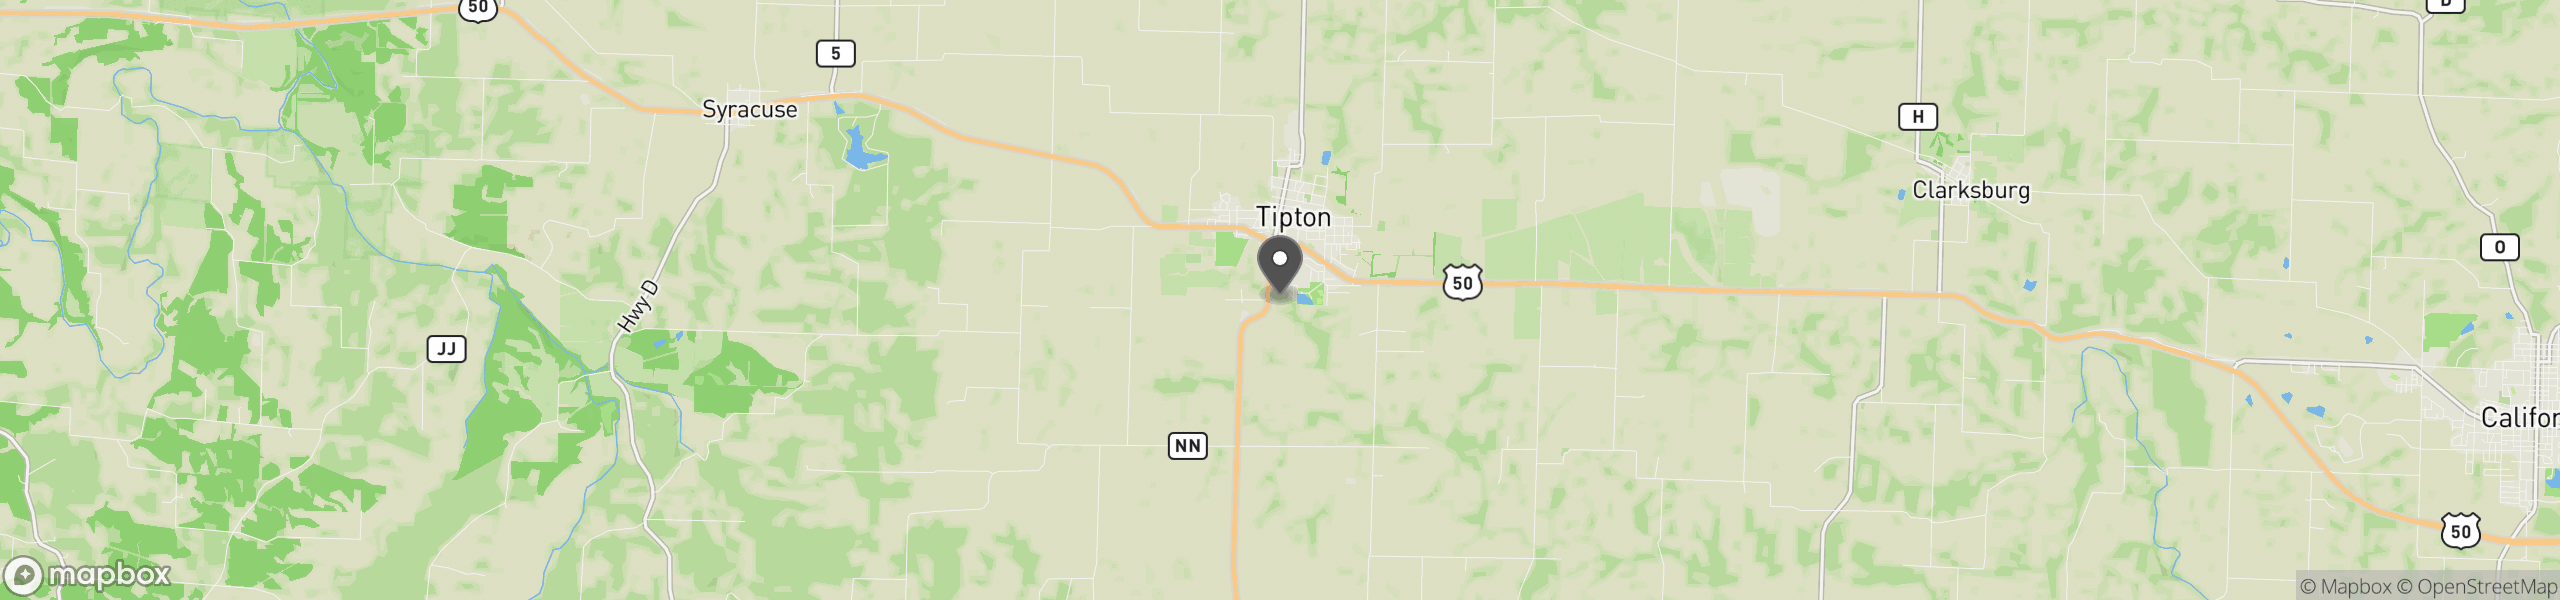 Tipton, MO